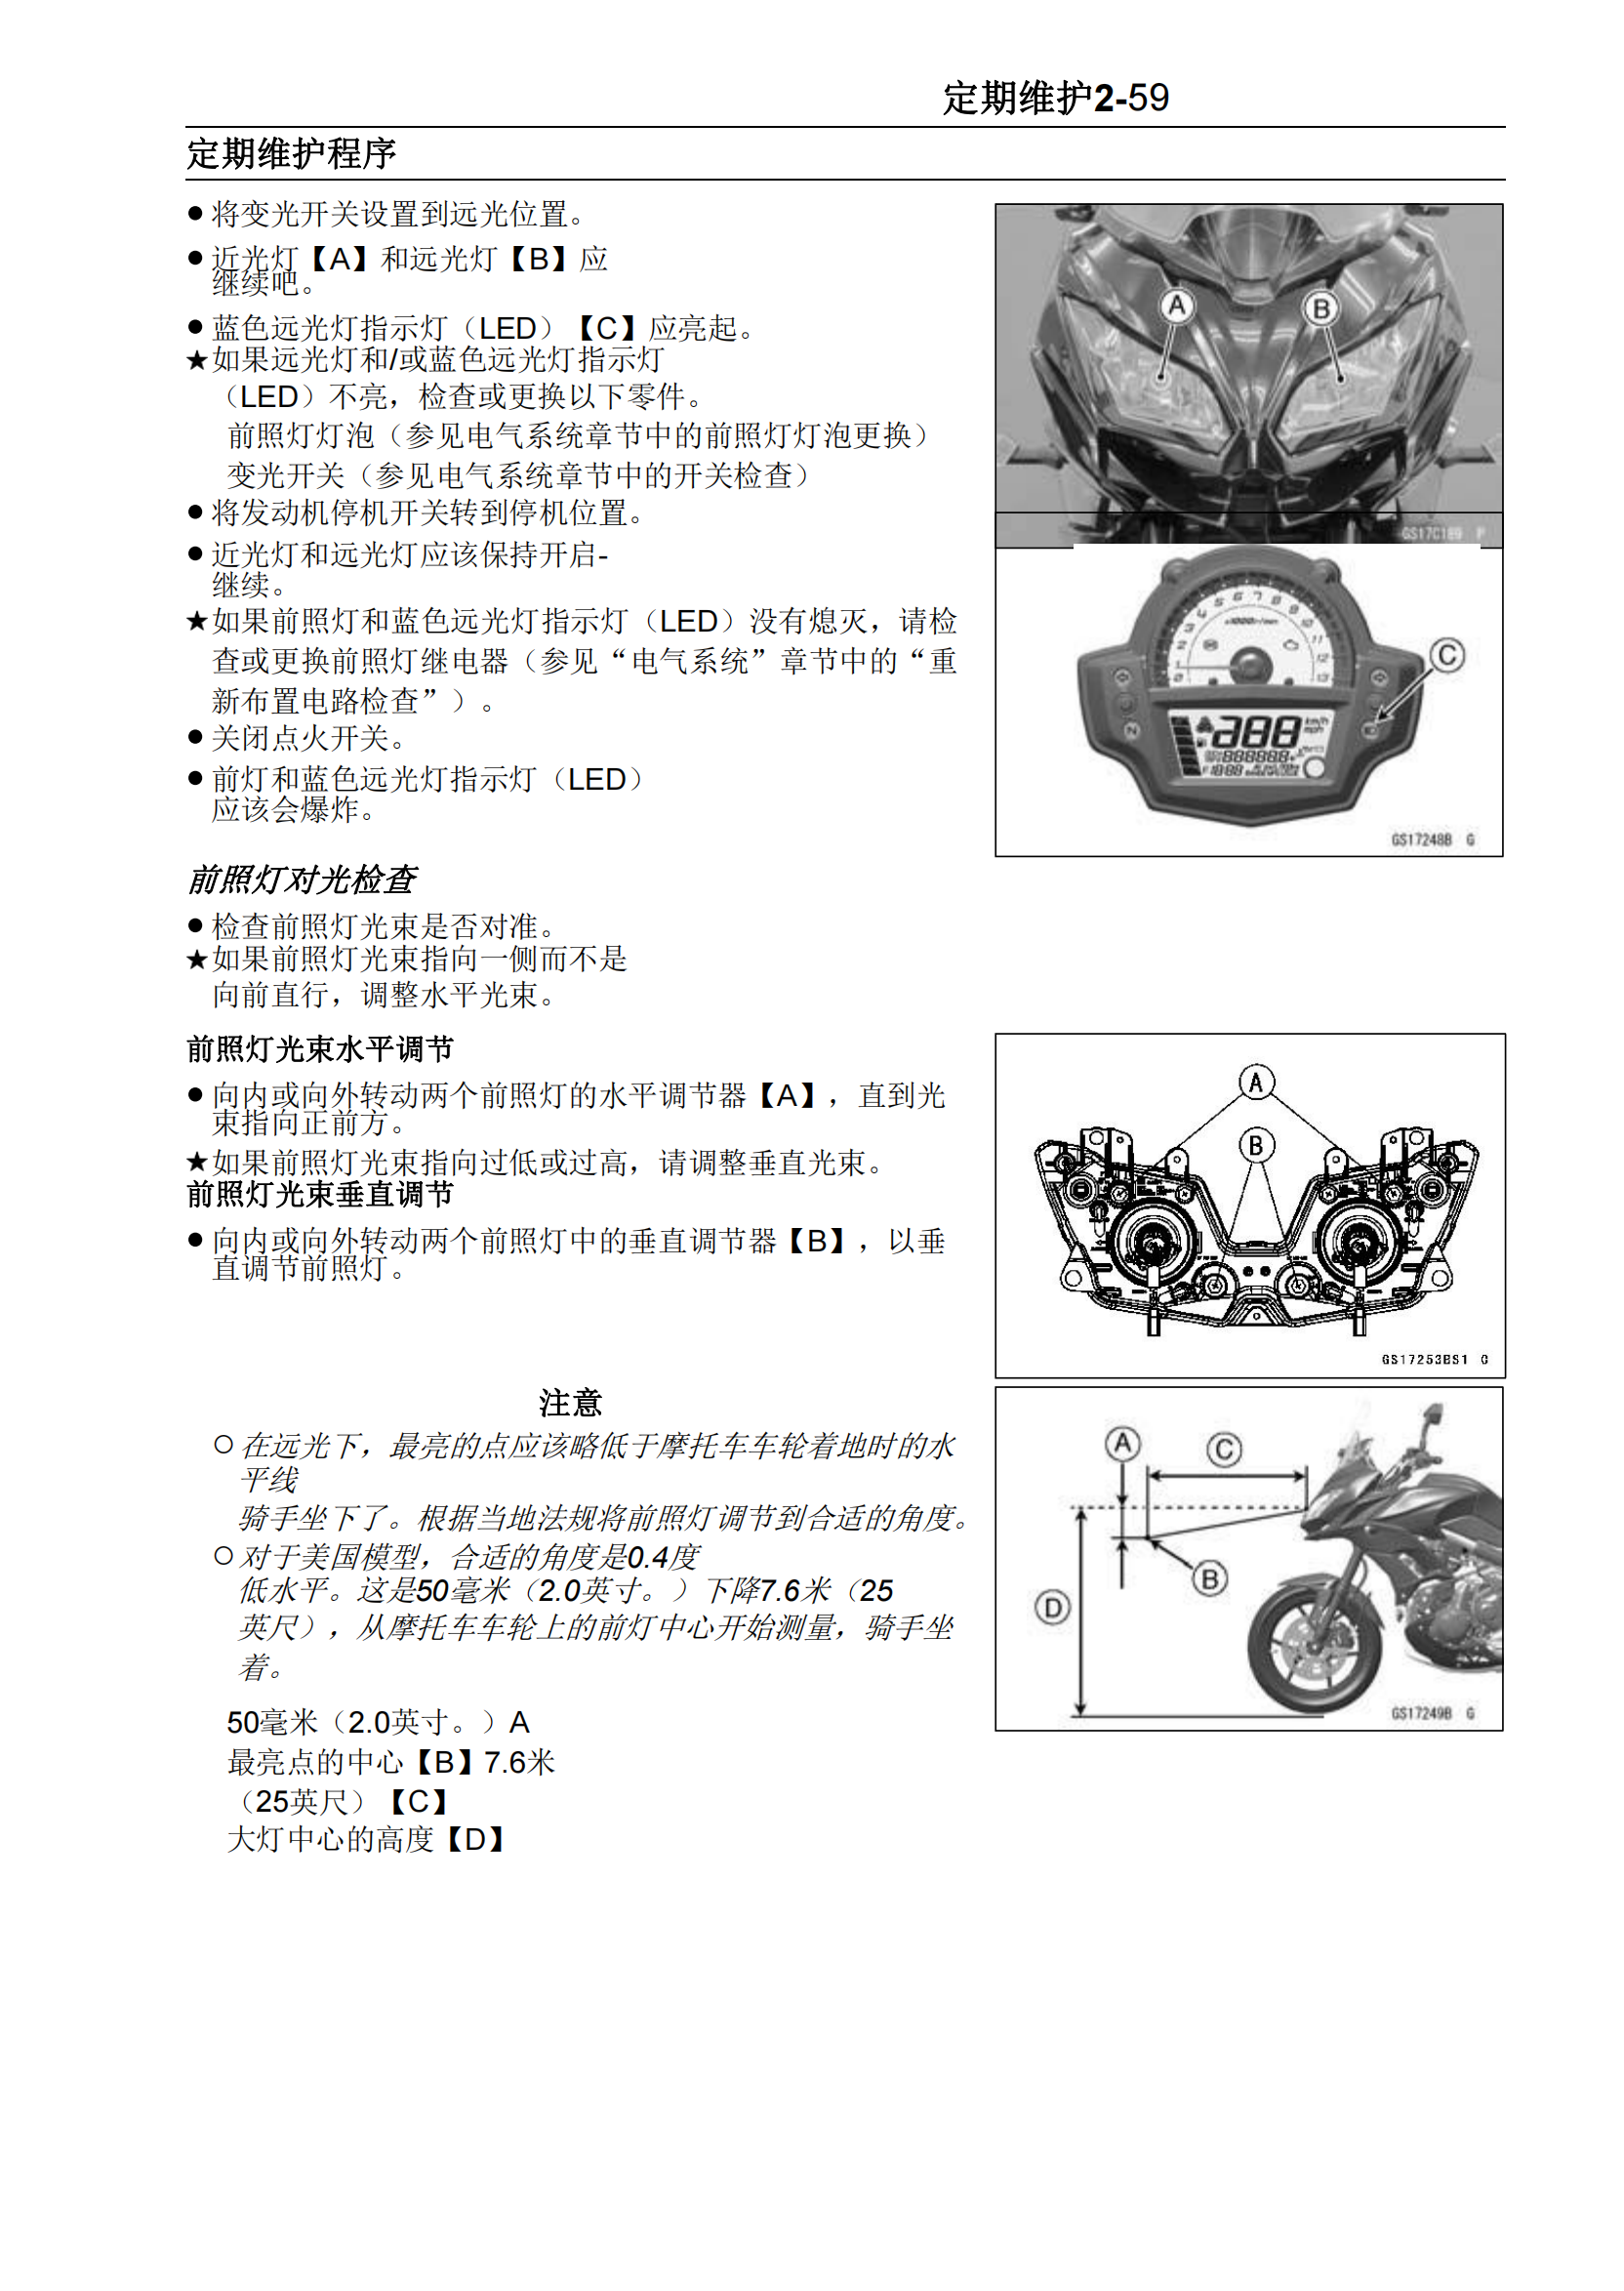 简体中文2015-2017年川崎Versys 650 ABS维修手册异兽650维修手册插图3